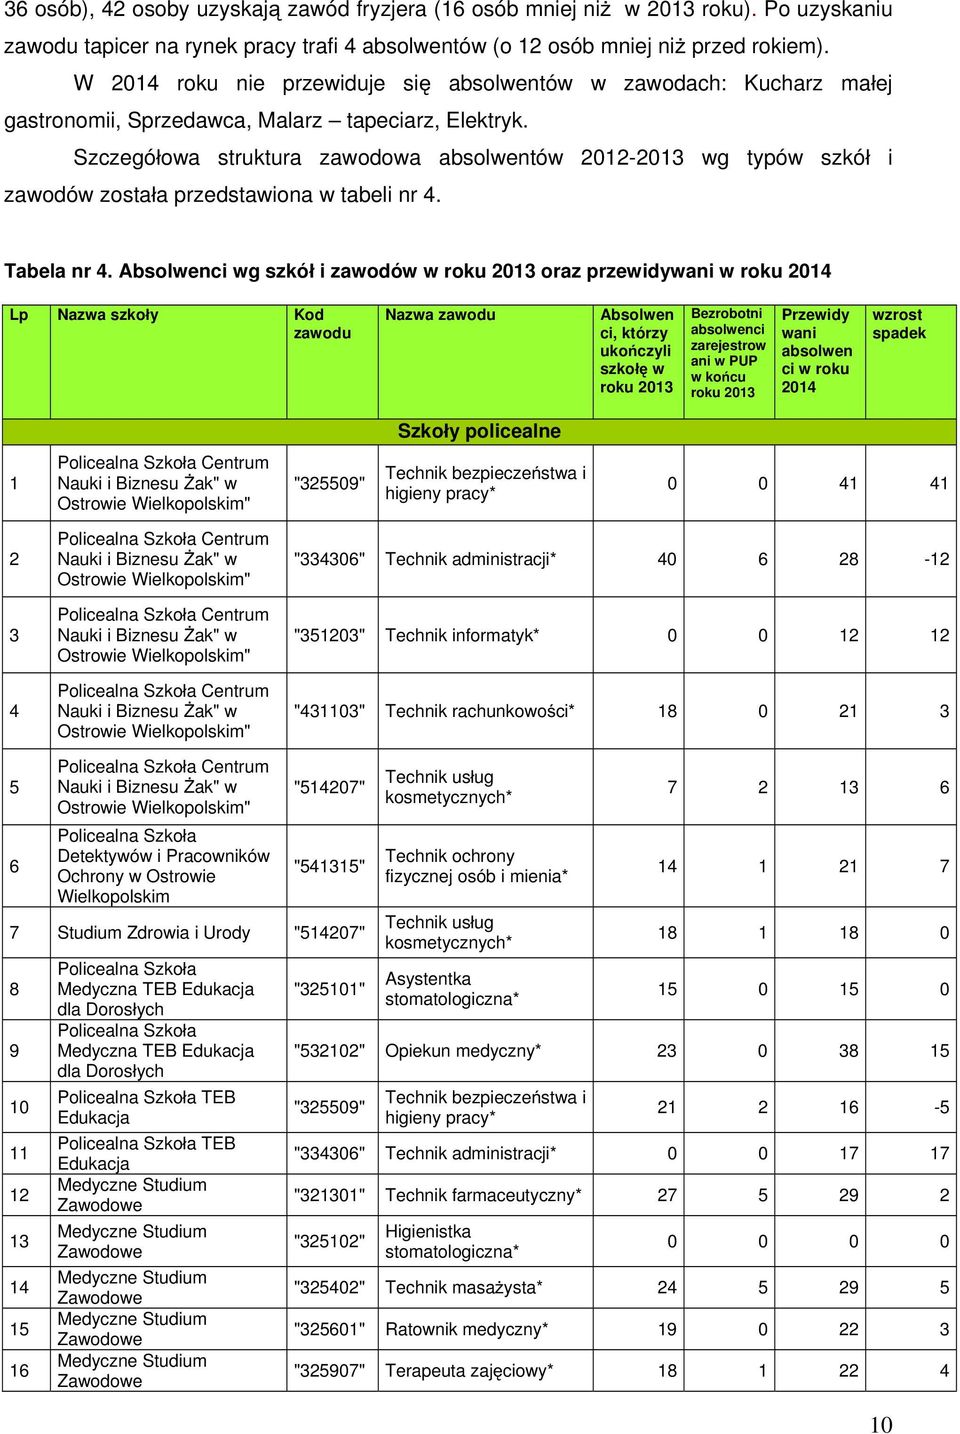 Szczegó owa struktura zawodowa absolwentów 2012-2013 wg typów szkó i zawodów zosta a przedstawiona w tabeli nr 4. Tabela nr 4.